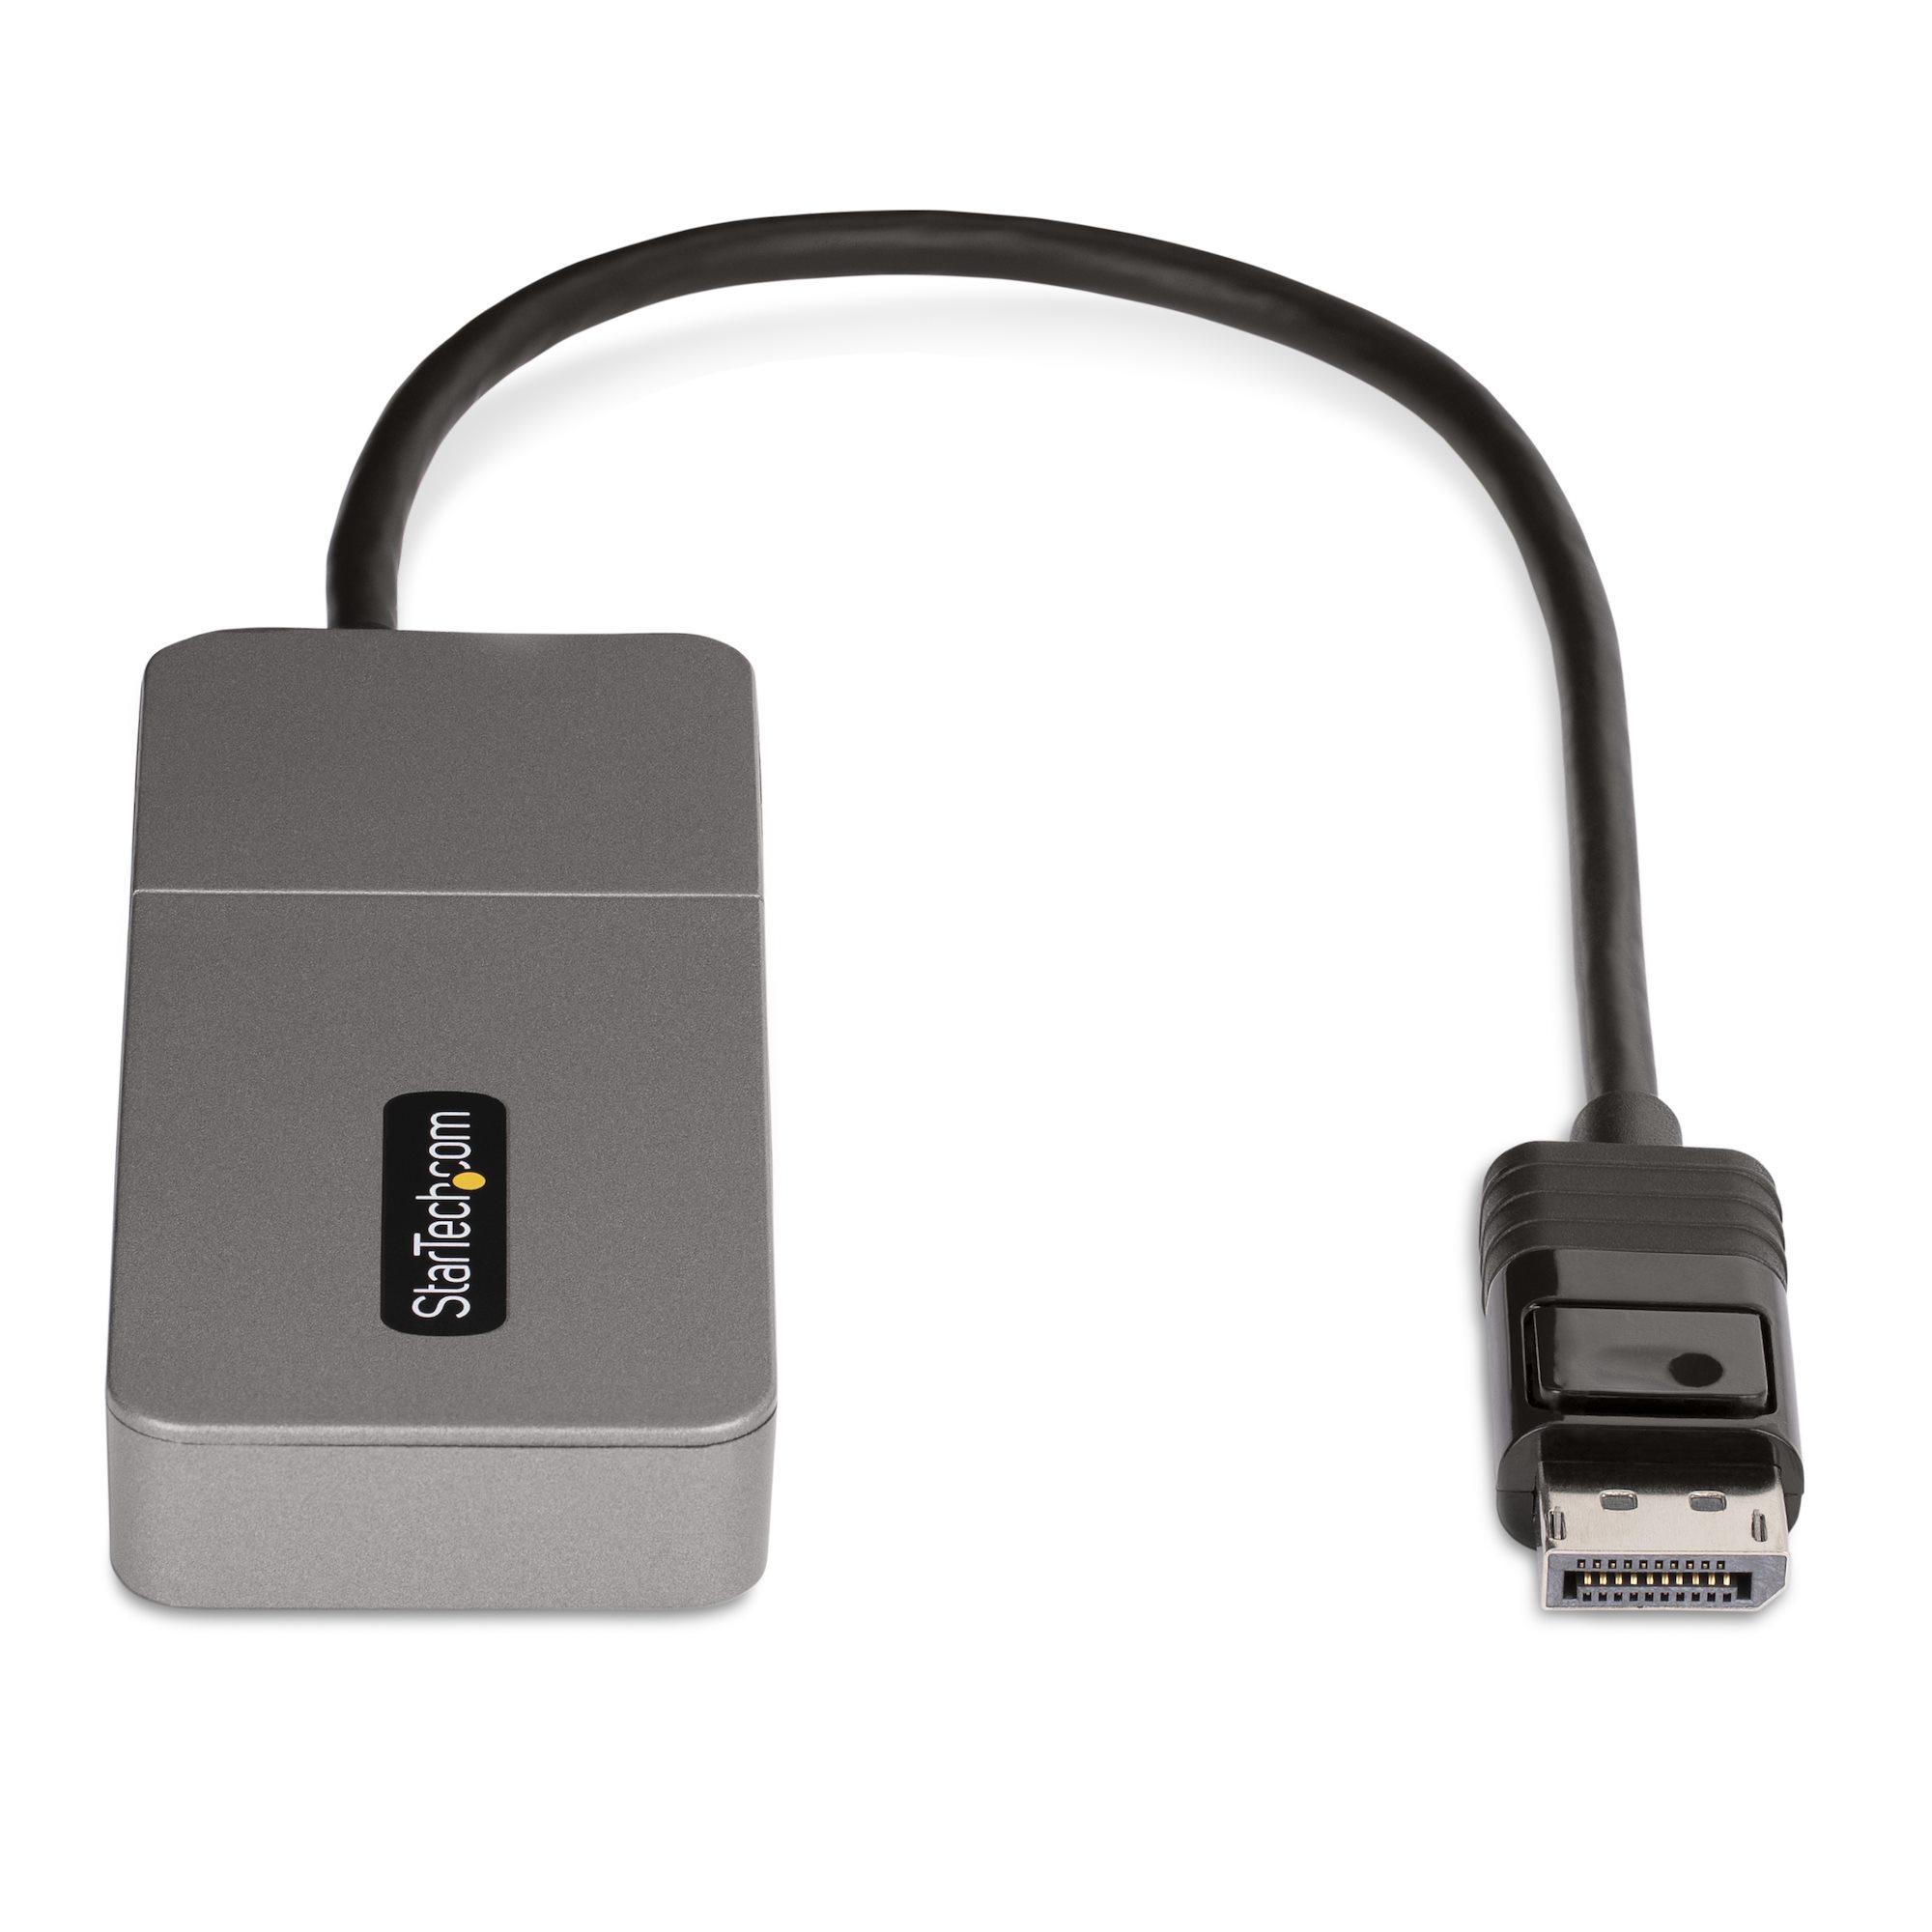 3-Port DisplayPort to HDMI Splitter, MST Hub, 4K 60 Hz UHD